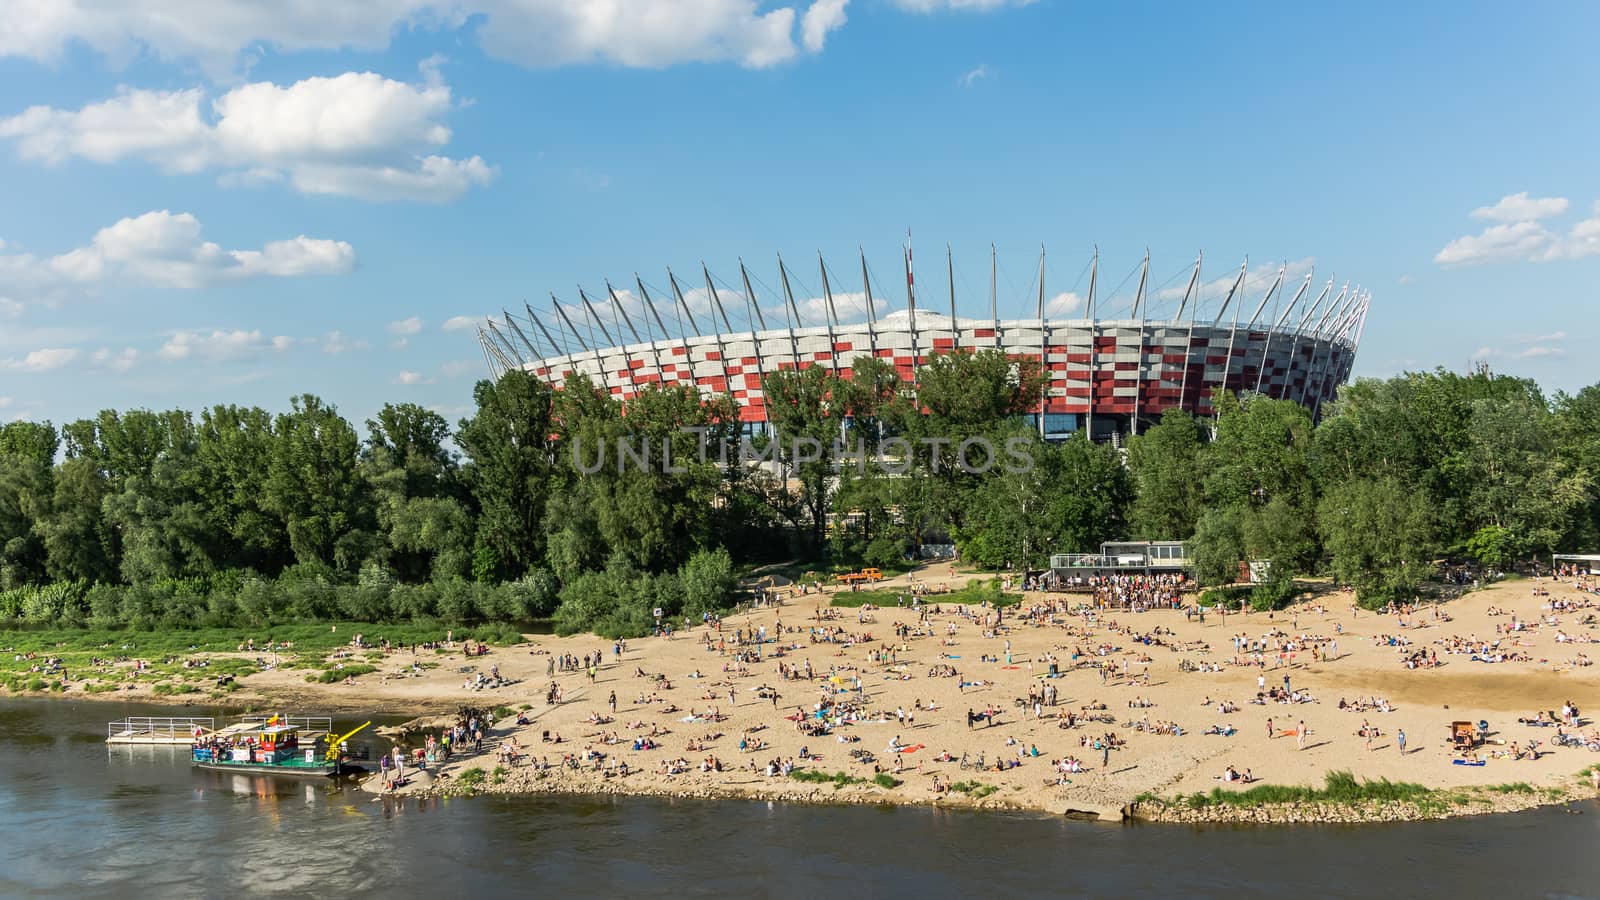 Polish National Stadium in Warsaw by pawel_szczepanski